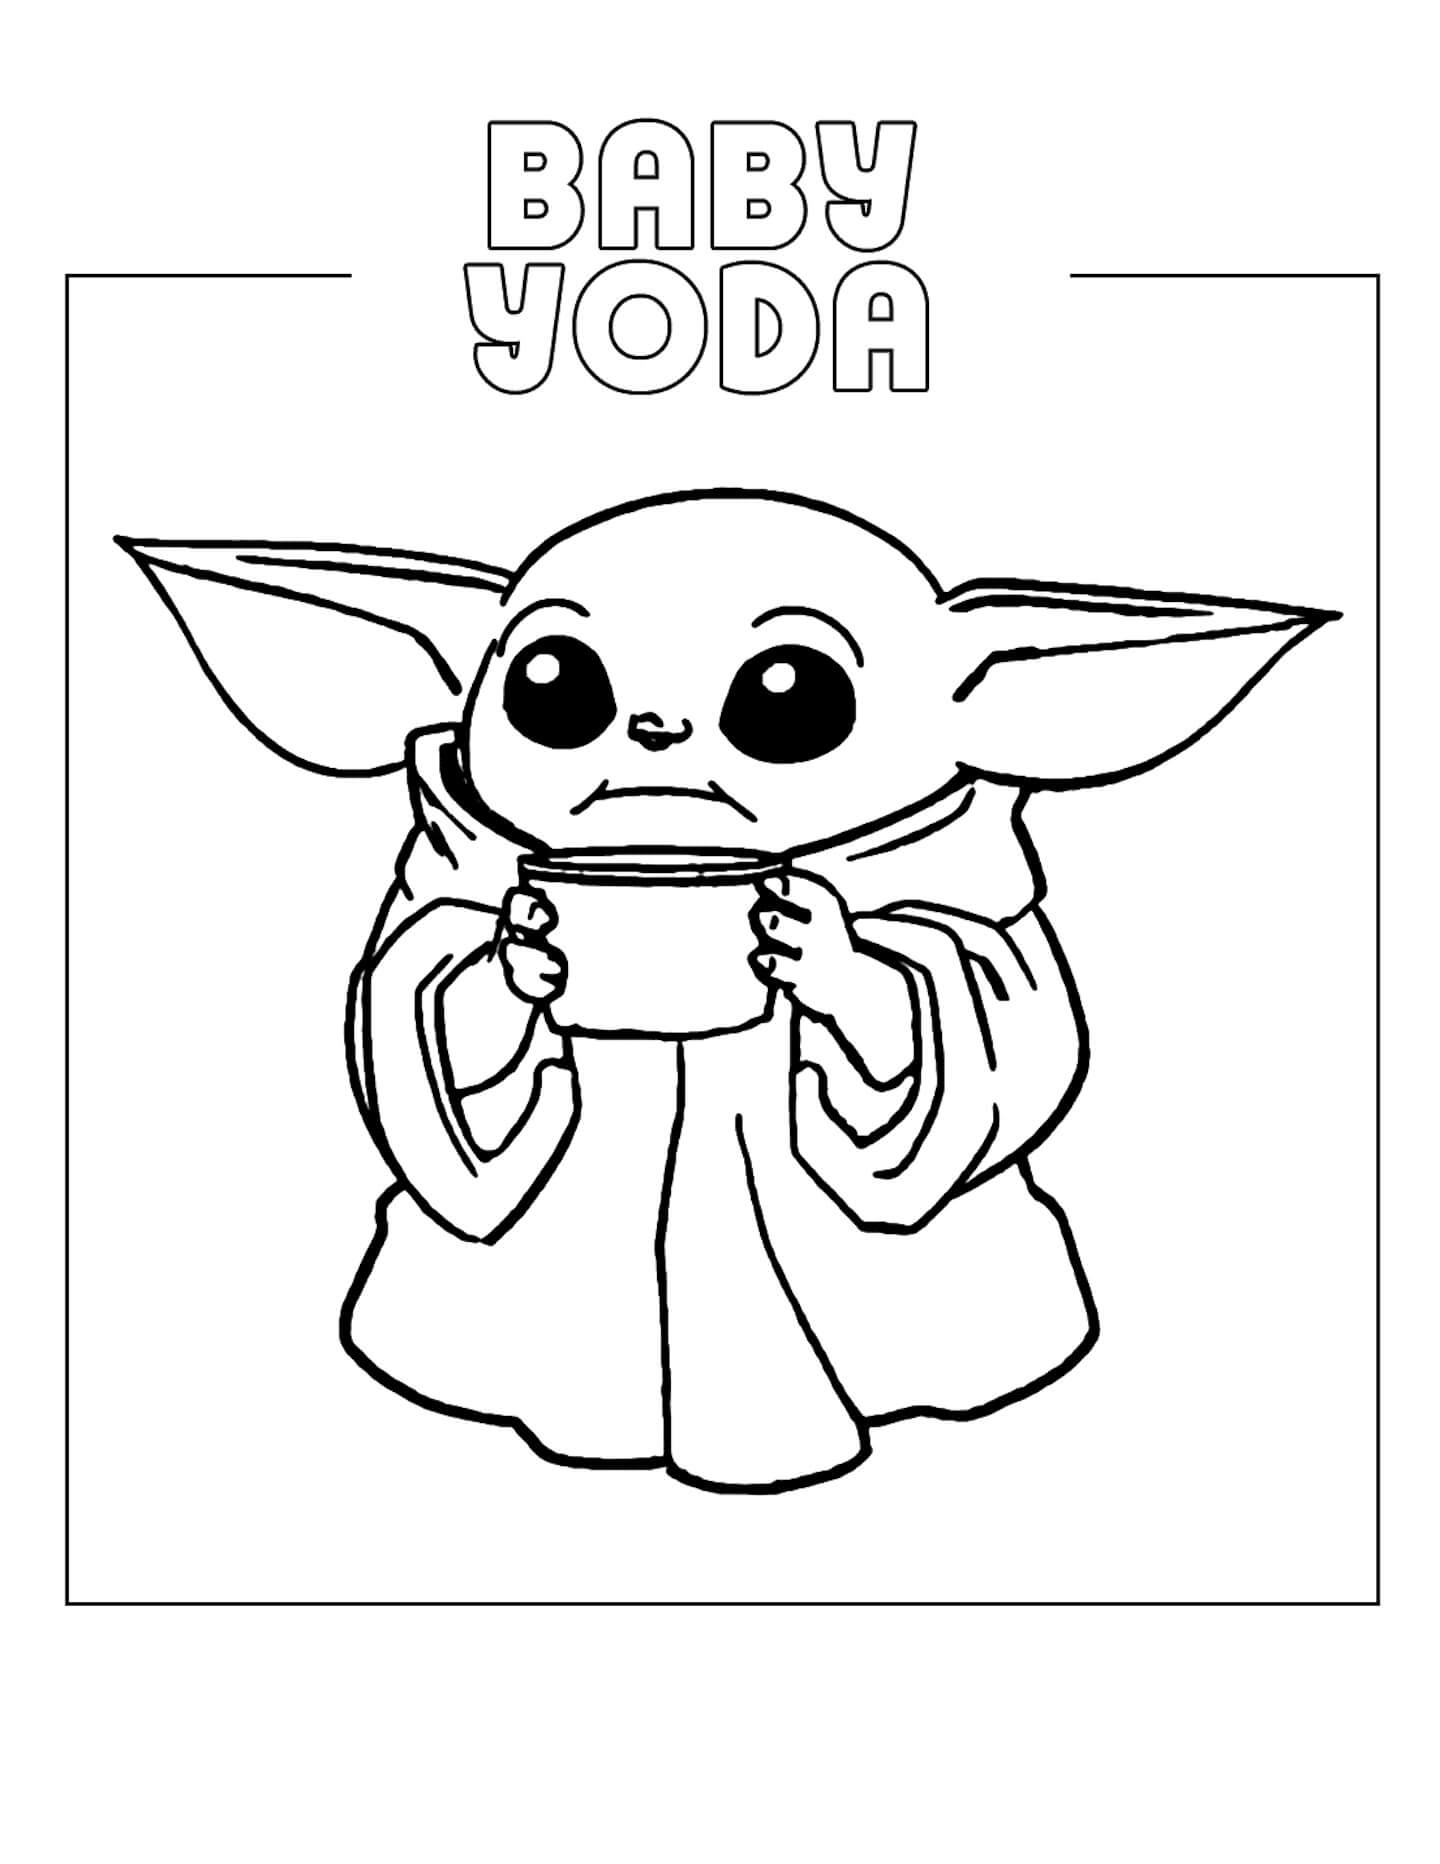 Impressionante bebê Yoda para colorir